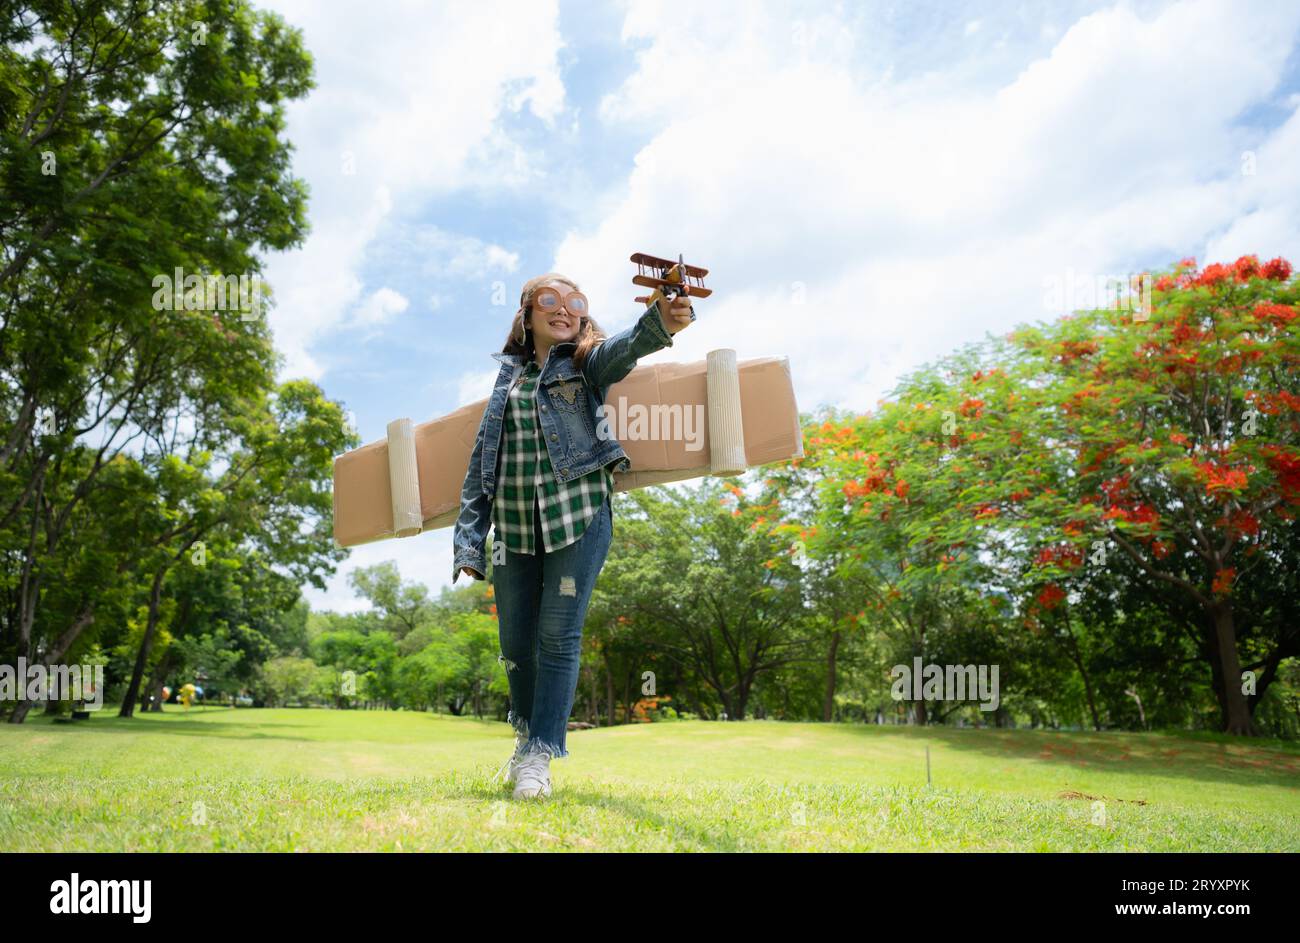 Ein kleines Mädchen im Urlaub im Park mit einem Piloten-Outfit und fliegender Ausrüstung. Lauf herum und hab Spaß mit ihren Träumen. Stockfoto